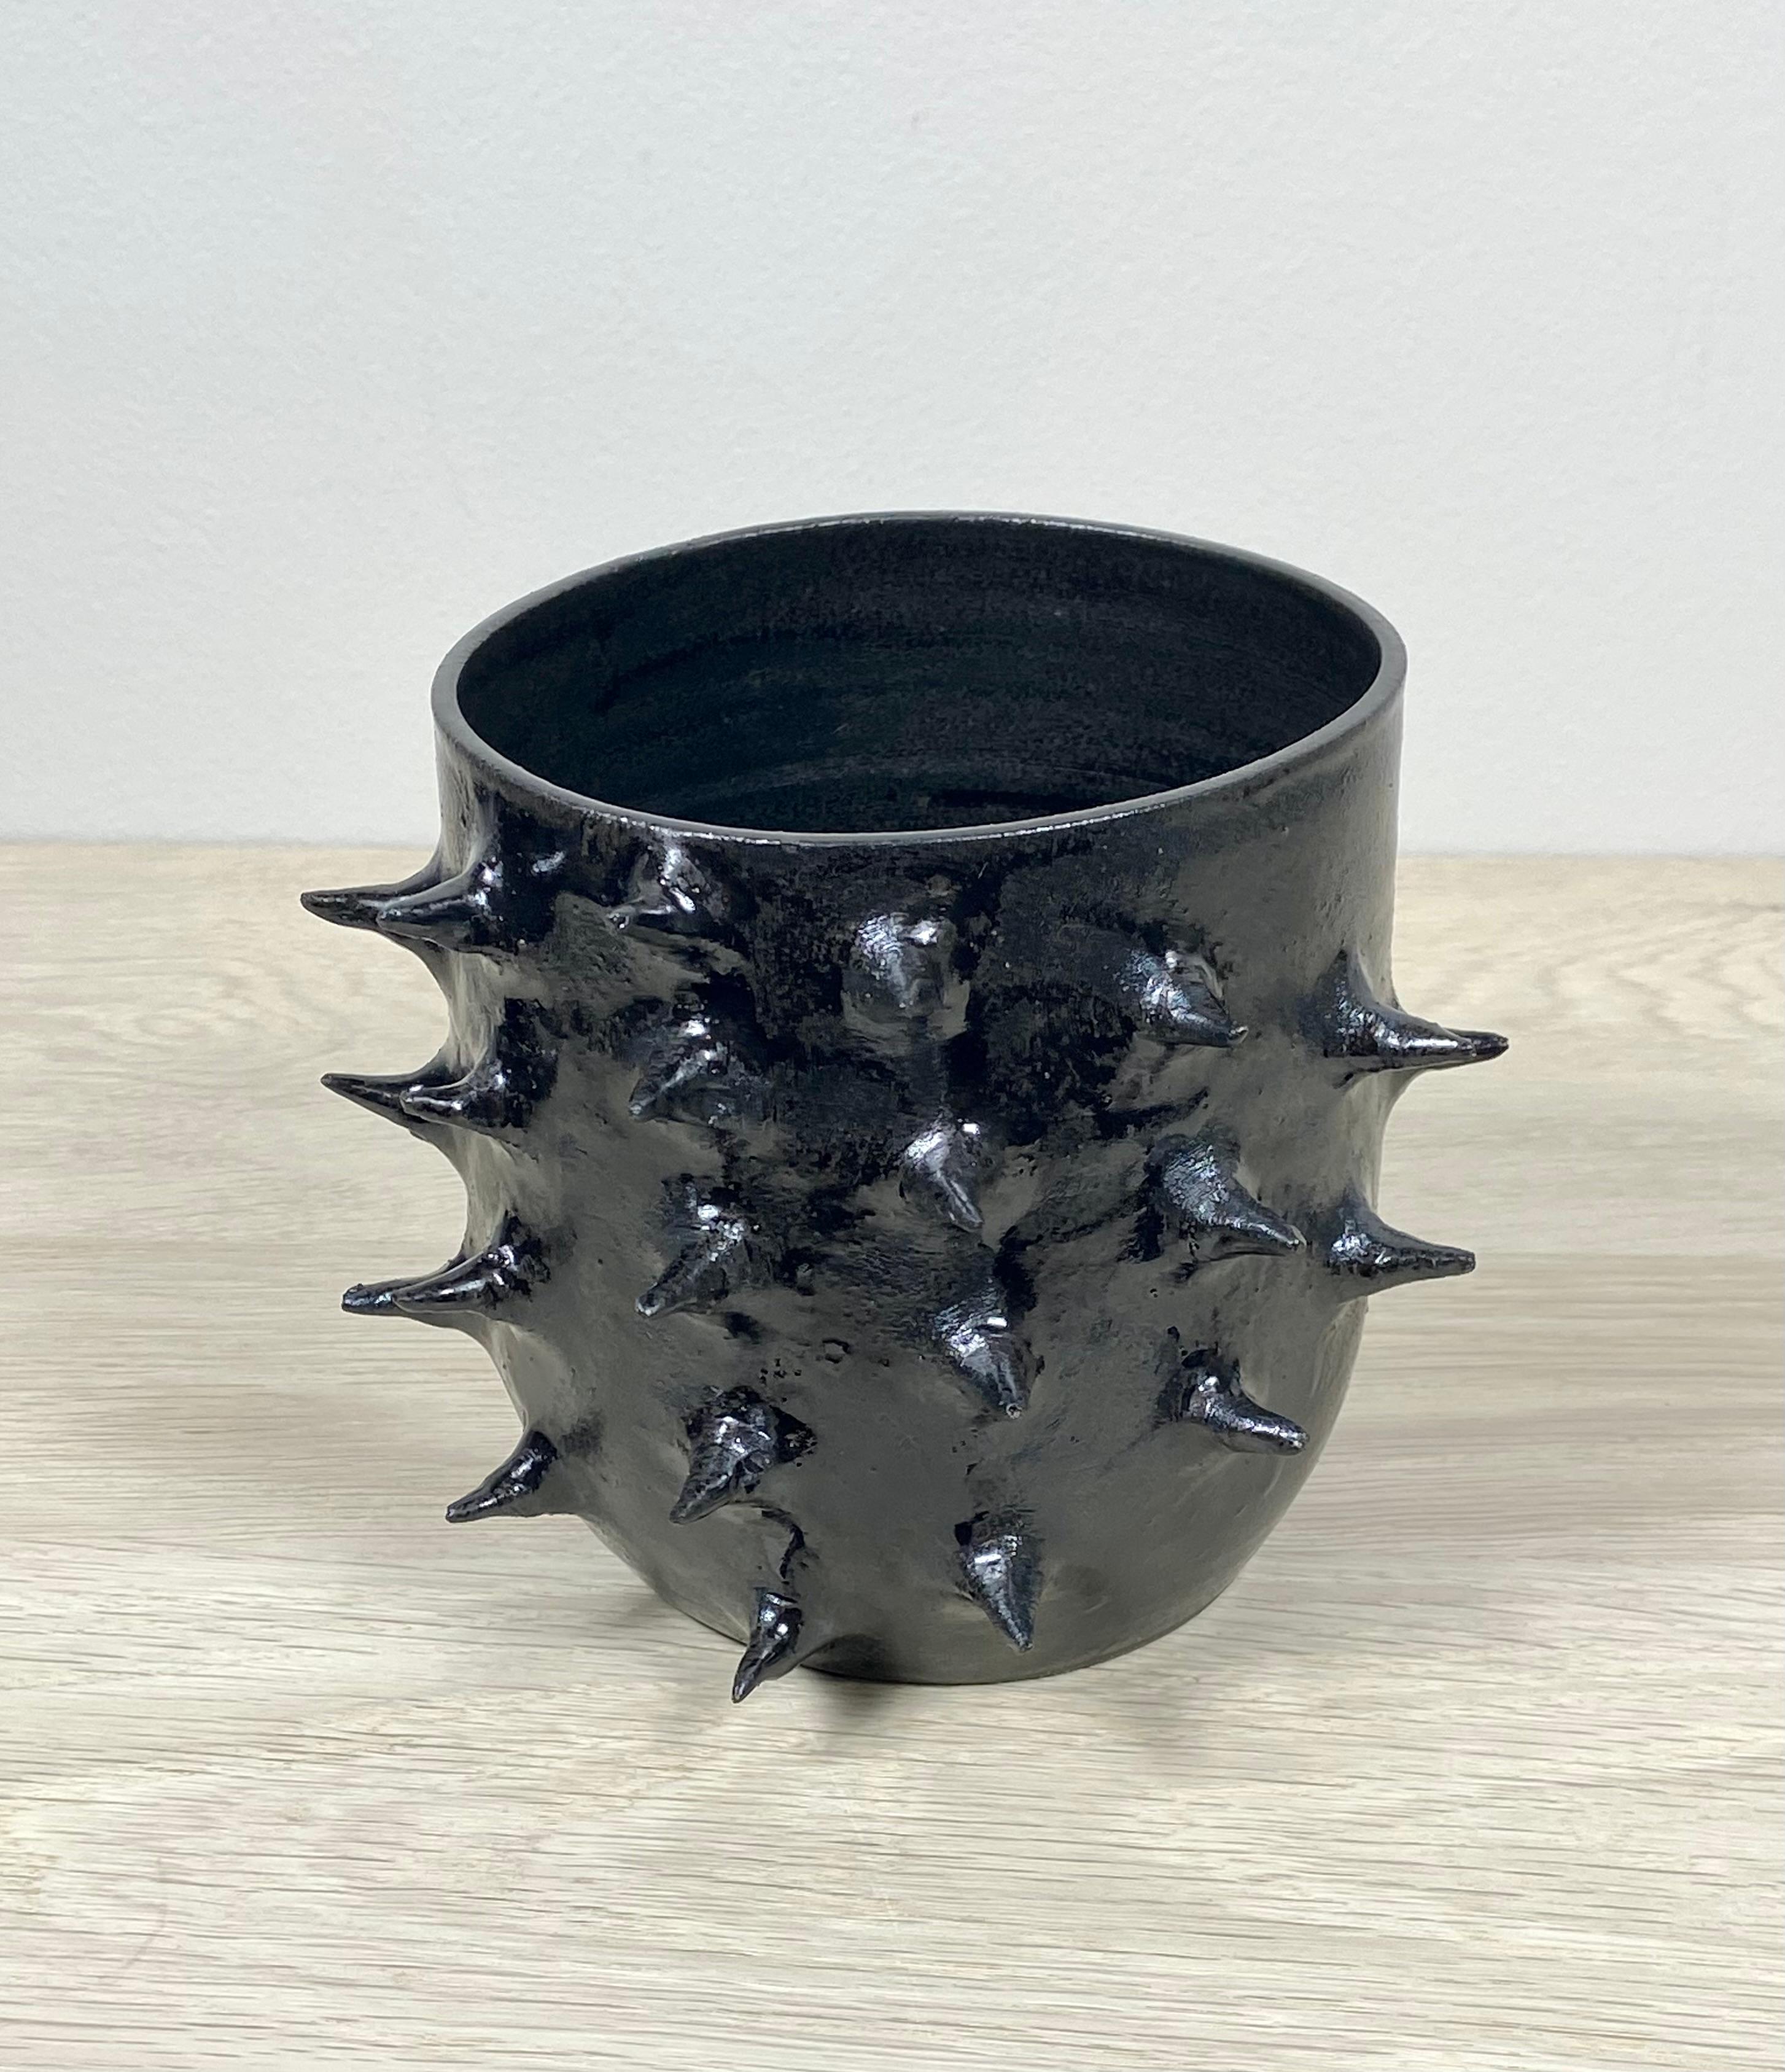 Spiky Ceramic Planter/Bowl with Metallic Glaze For Sale 2